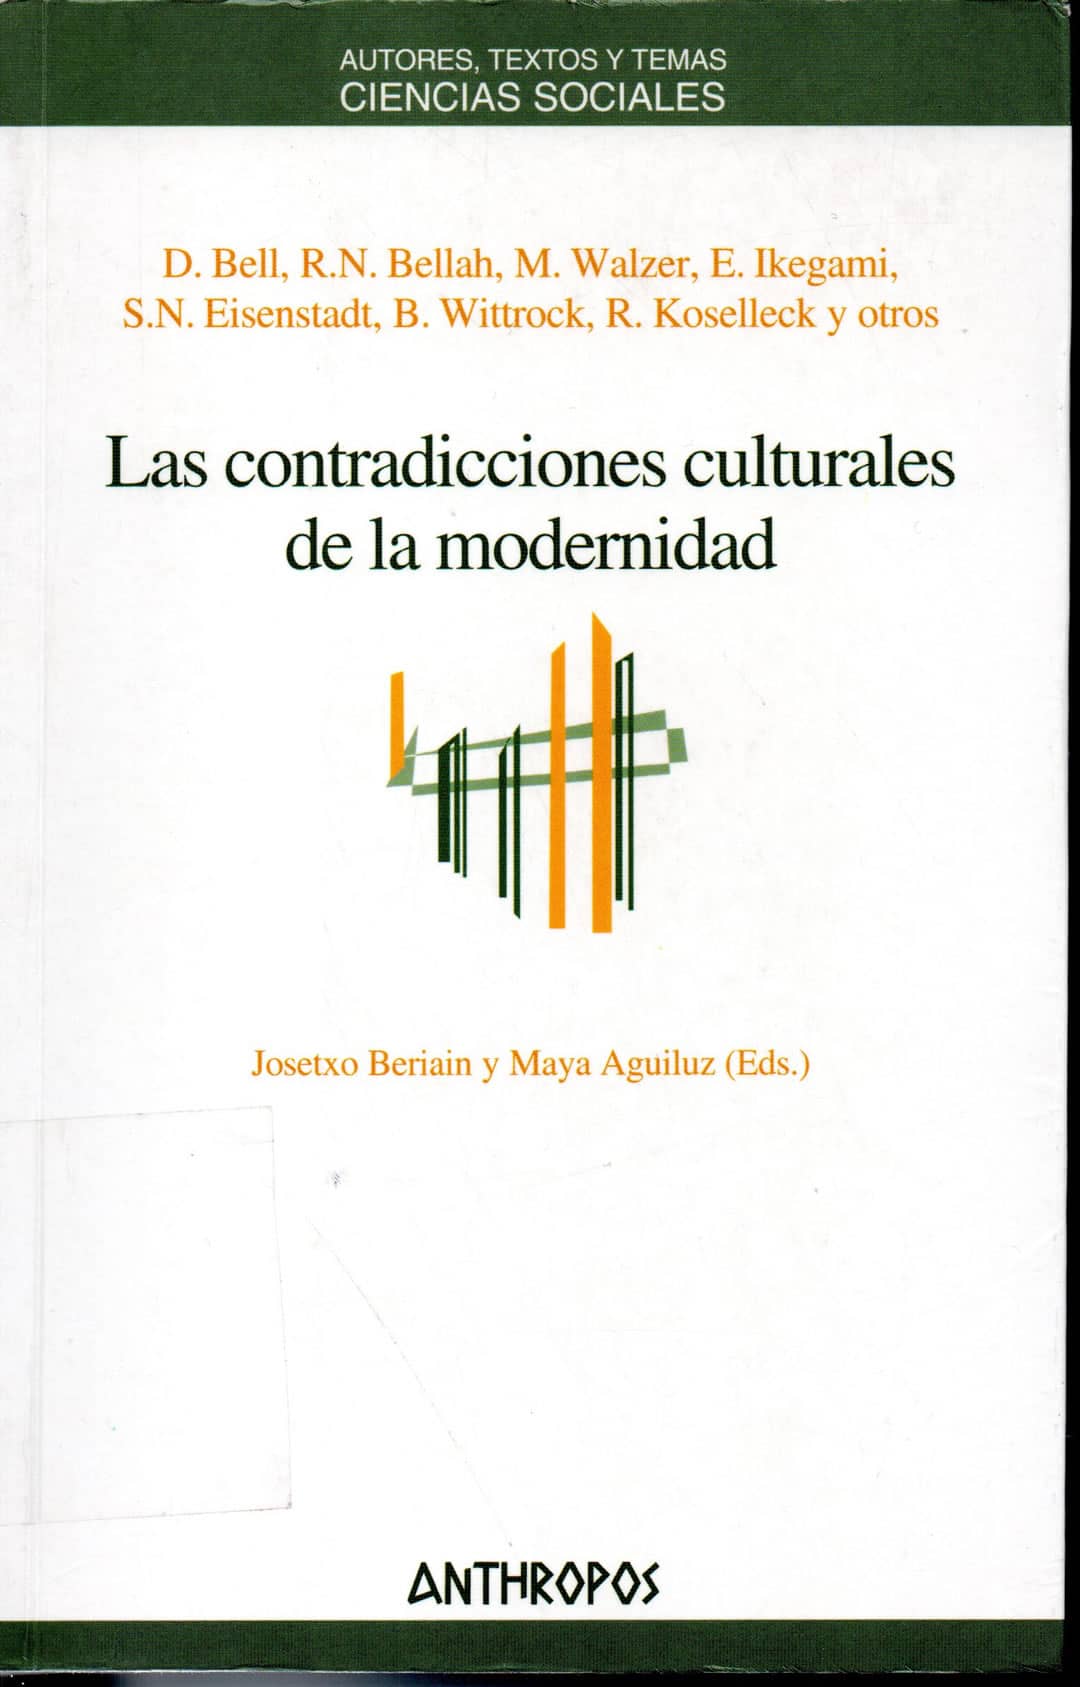 >Las contradicciones culturales de la modernidad